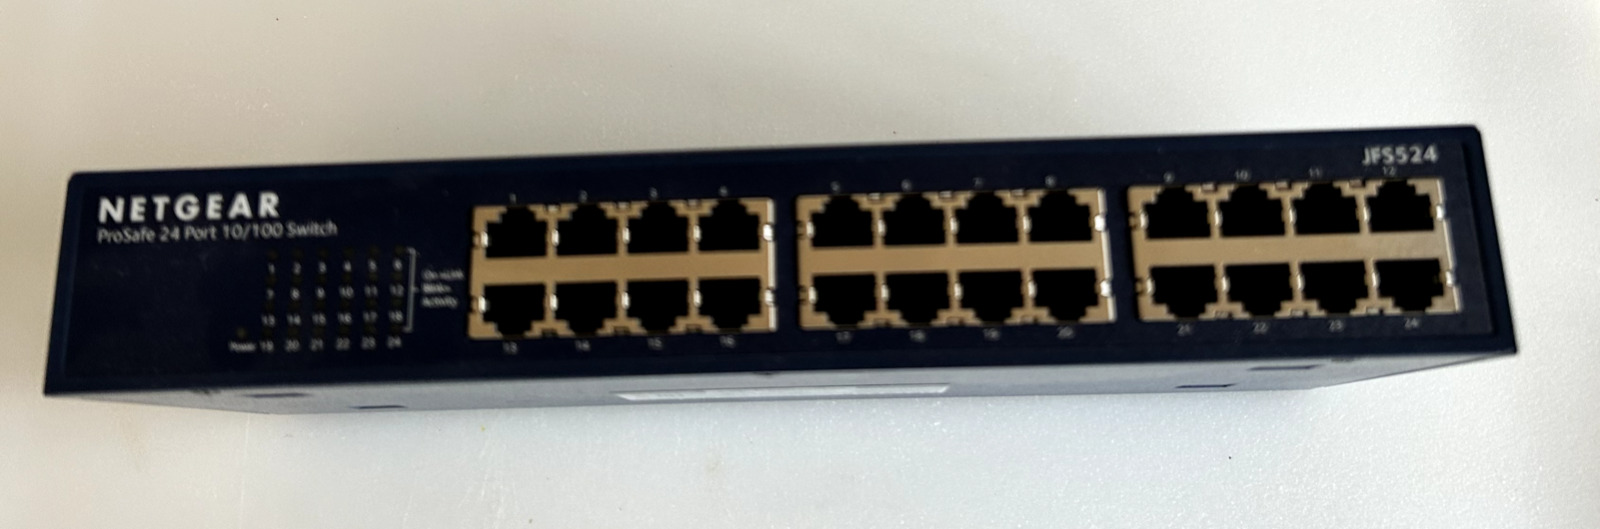 Netgear JFS524-200NAS ProSafe 24-Port 10/100 Mbps Fast Ethernet Switch